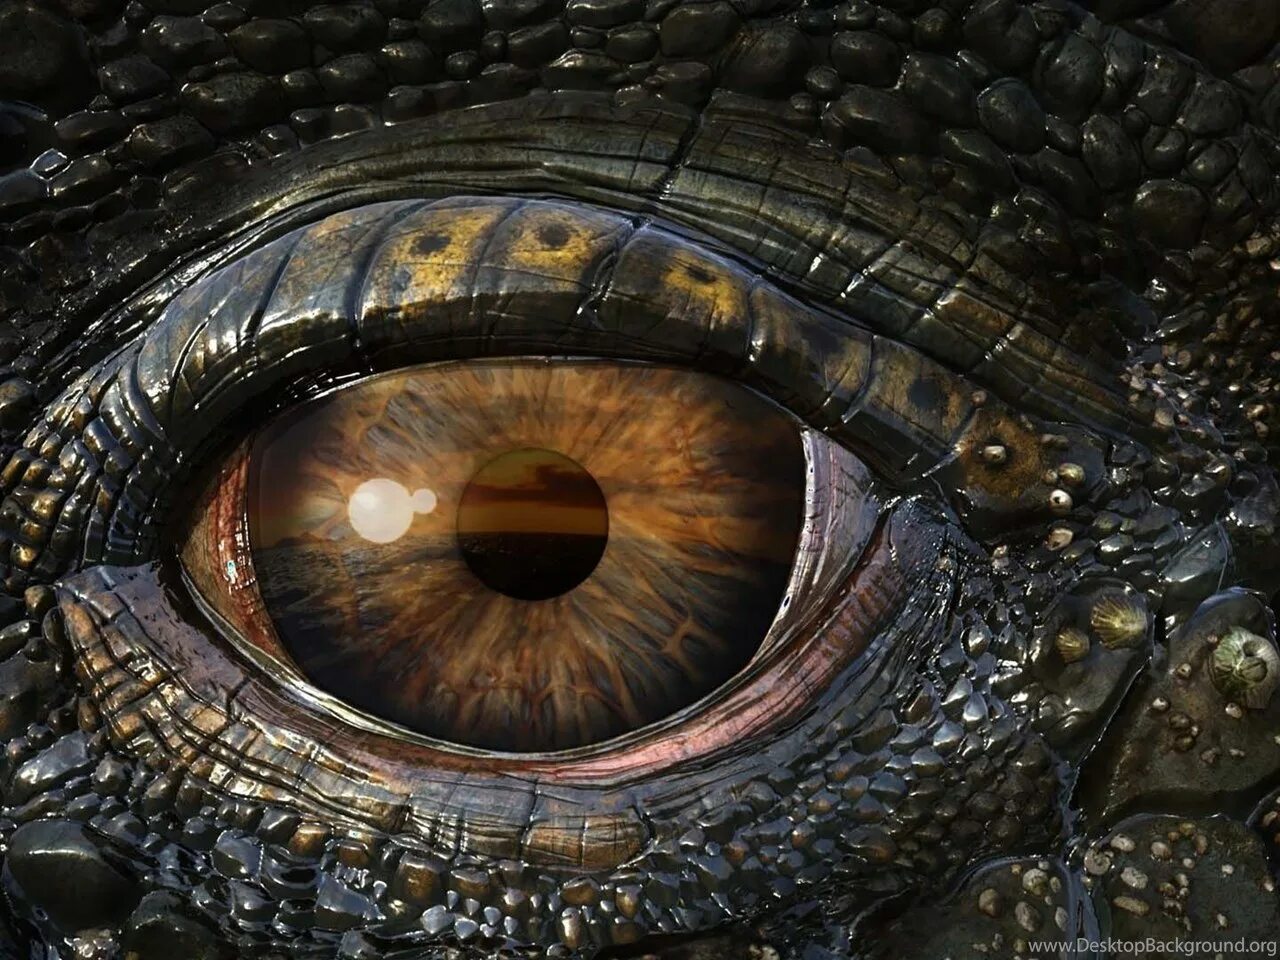 Dragon eye перевод. Морские динозавры 3d: путешествие в доисторический мир. Глаза дракона (Dragon Eyes). Глаз дракона Смауг.